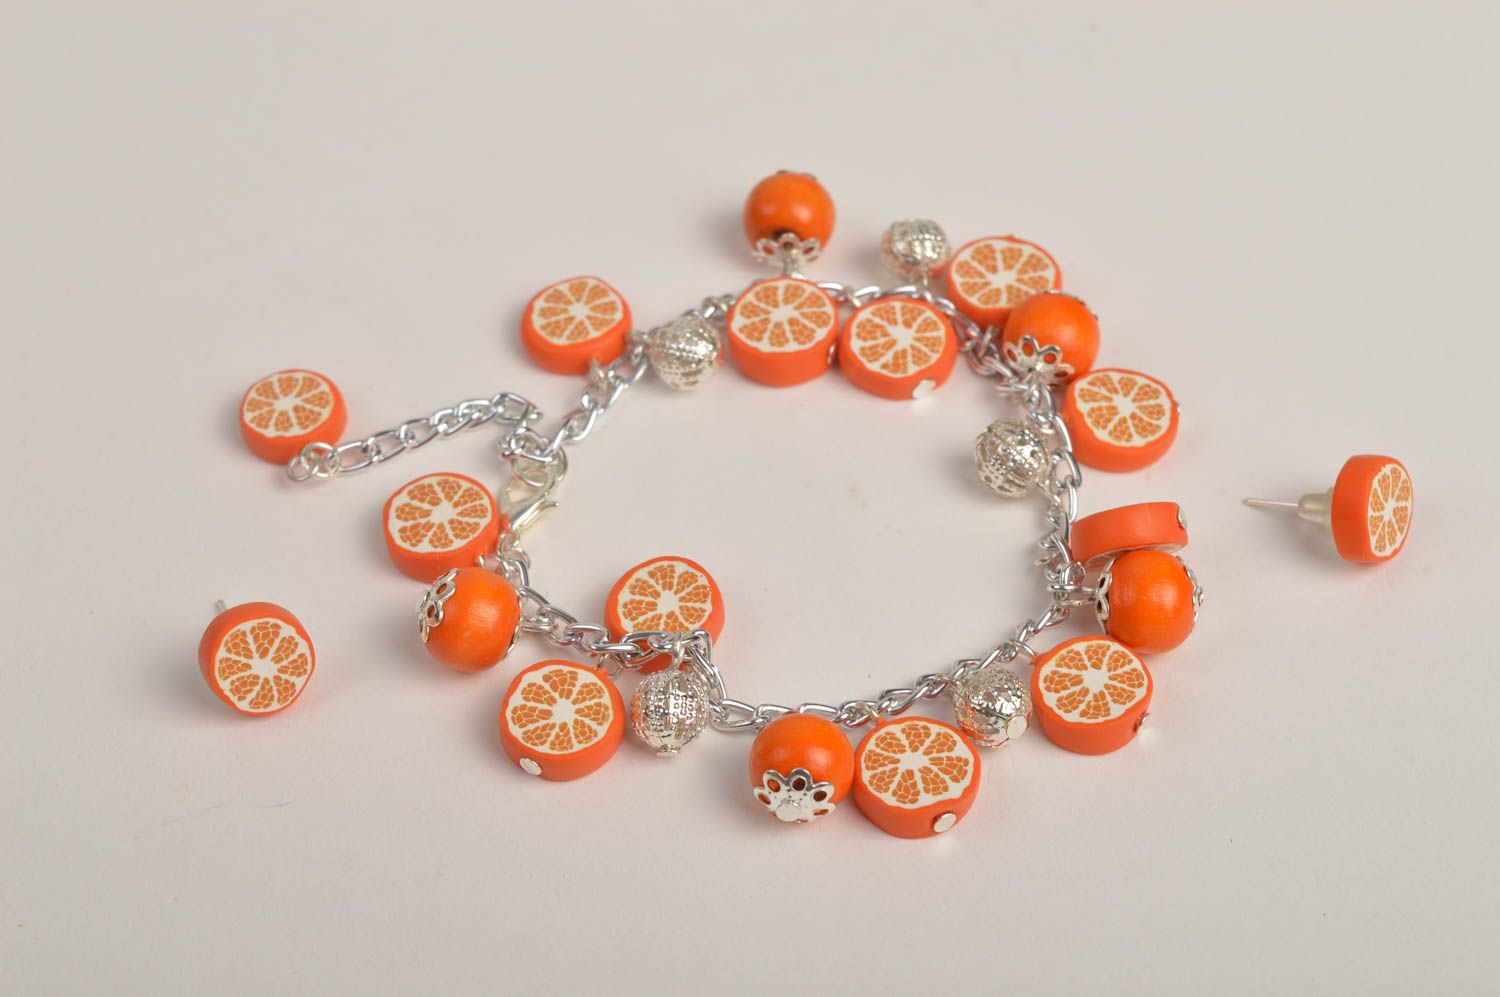 Wrist bracelet fashion earrings polymer clay jewelry oranges women jewelry  photo 3